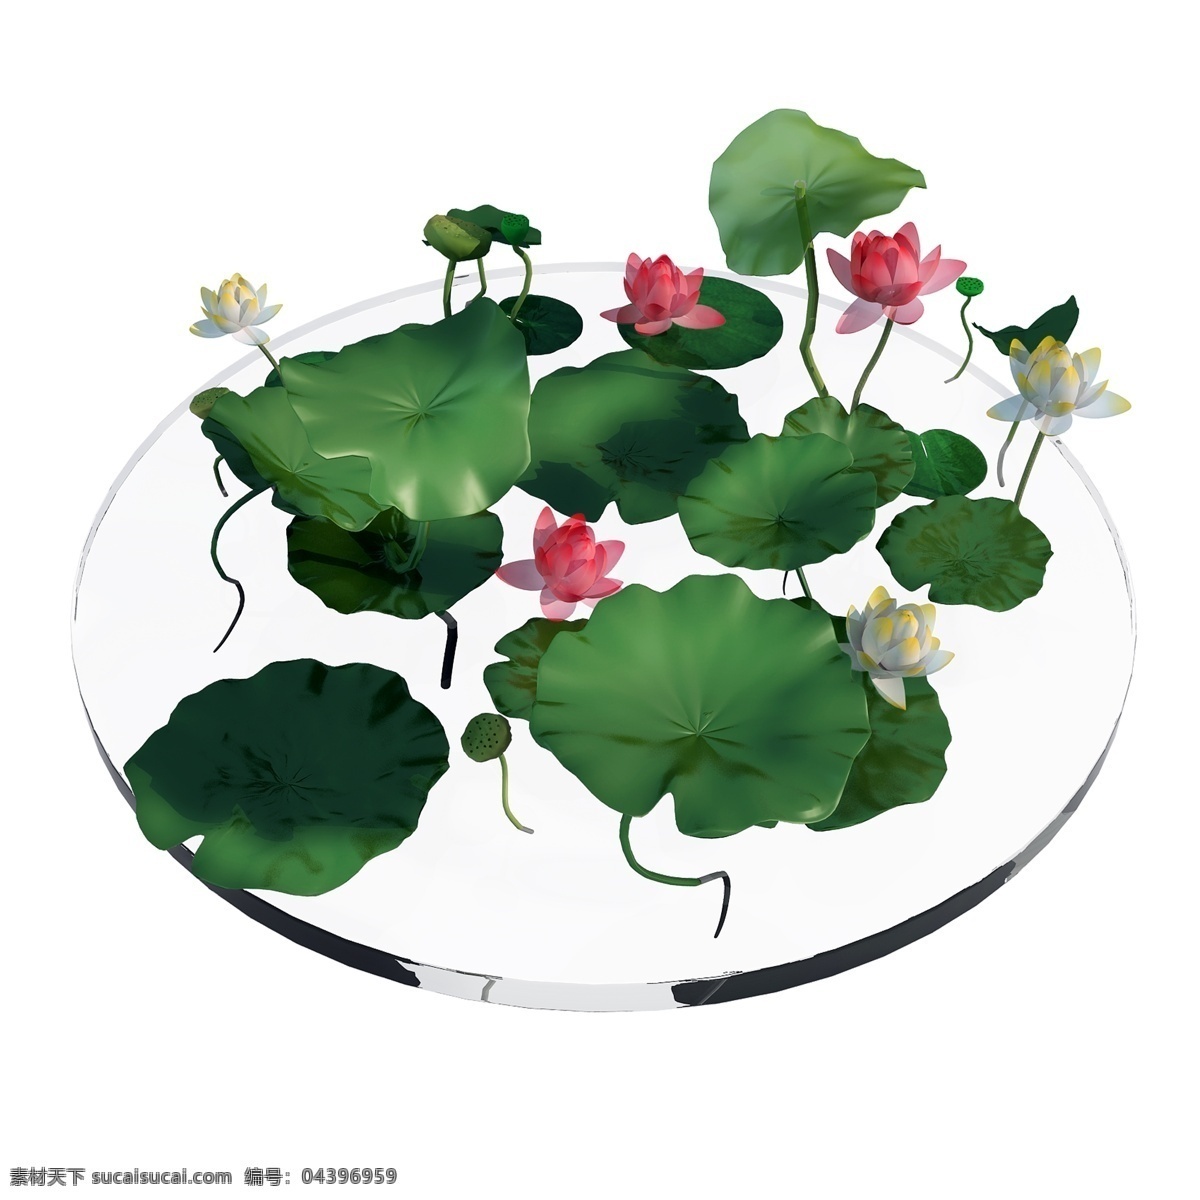 池塘 荷花 荷叶 图 立体 花卉 3d 夏季 花朵 创意 套图 png图 粉色 莲花 开花